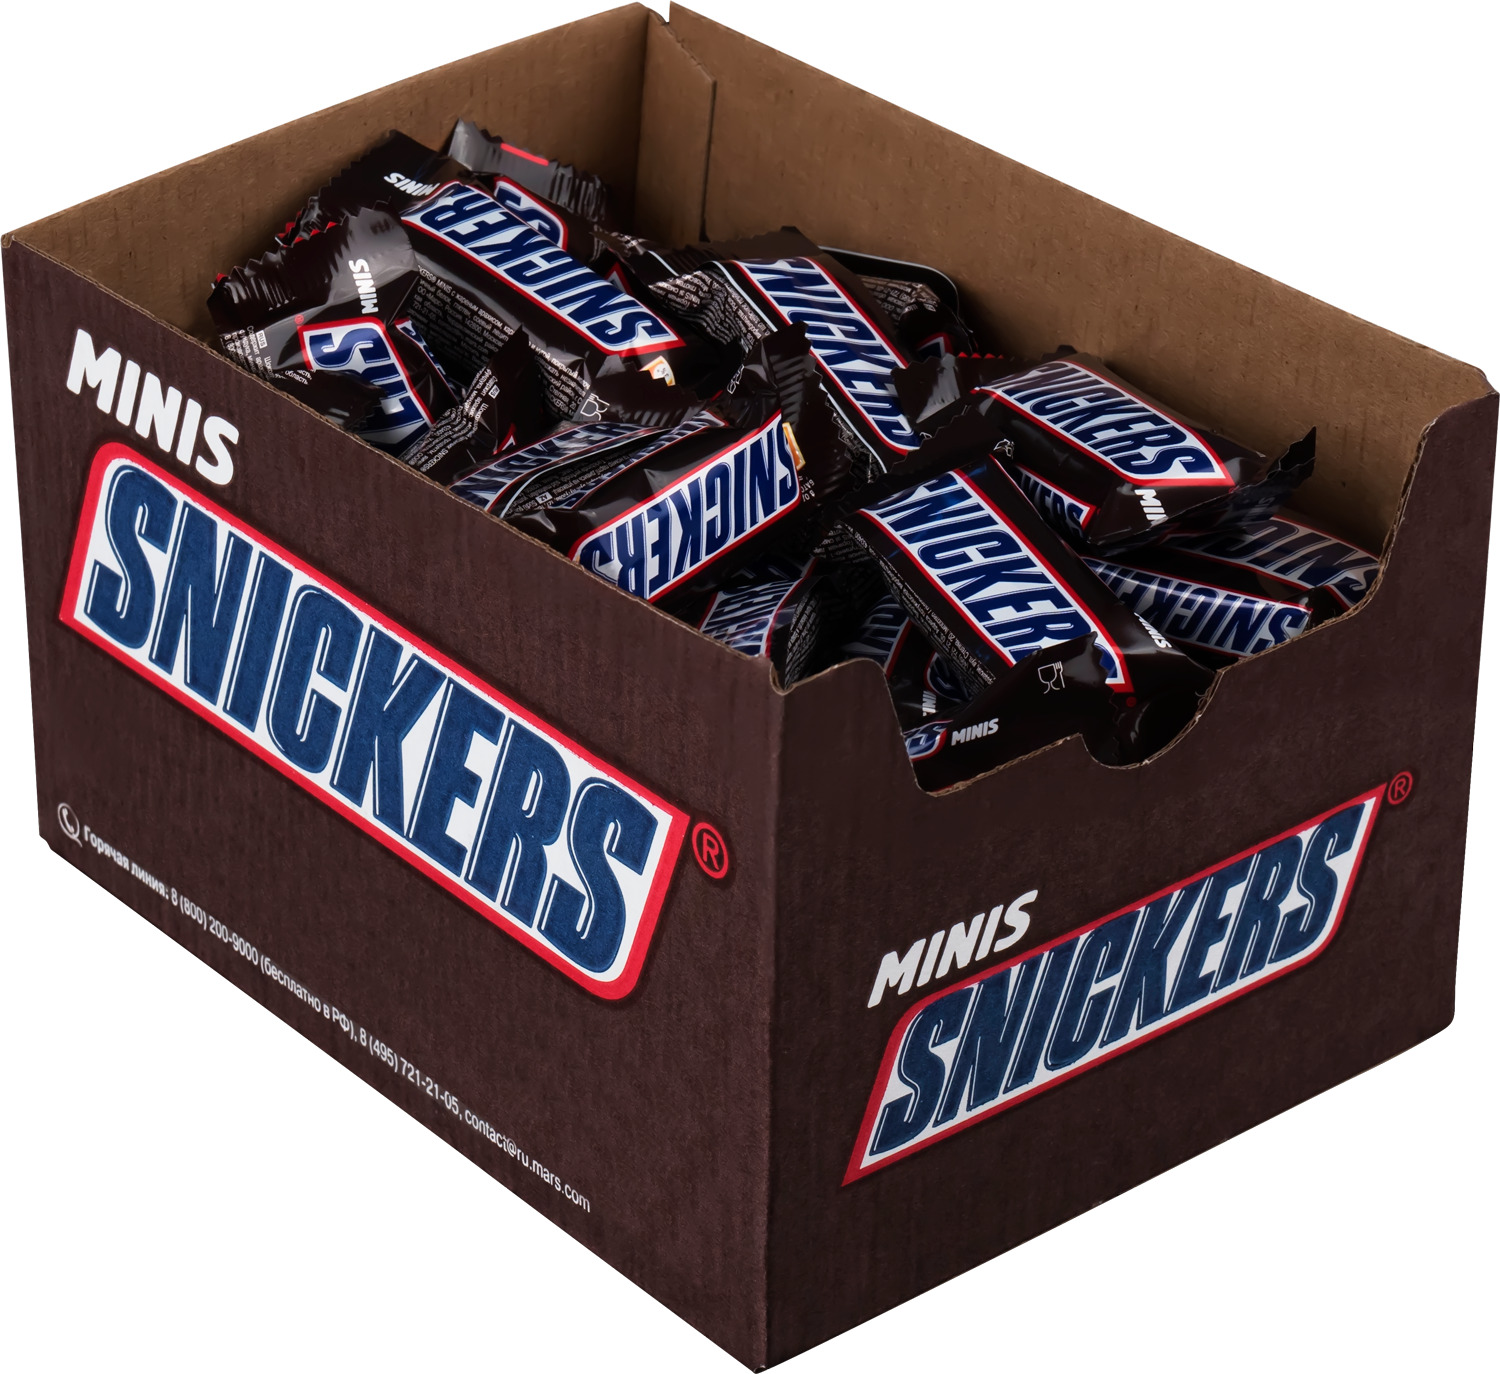 Шоколадные конфеты Snickers Minis, Молочный шоколад, Арахис, Нуга, Карамель, Коробка, 1кг - купить в Мегамаркет Москва, цена на Мегамаркет